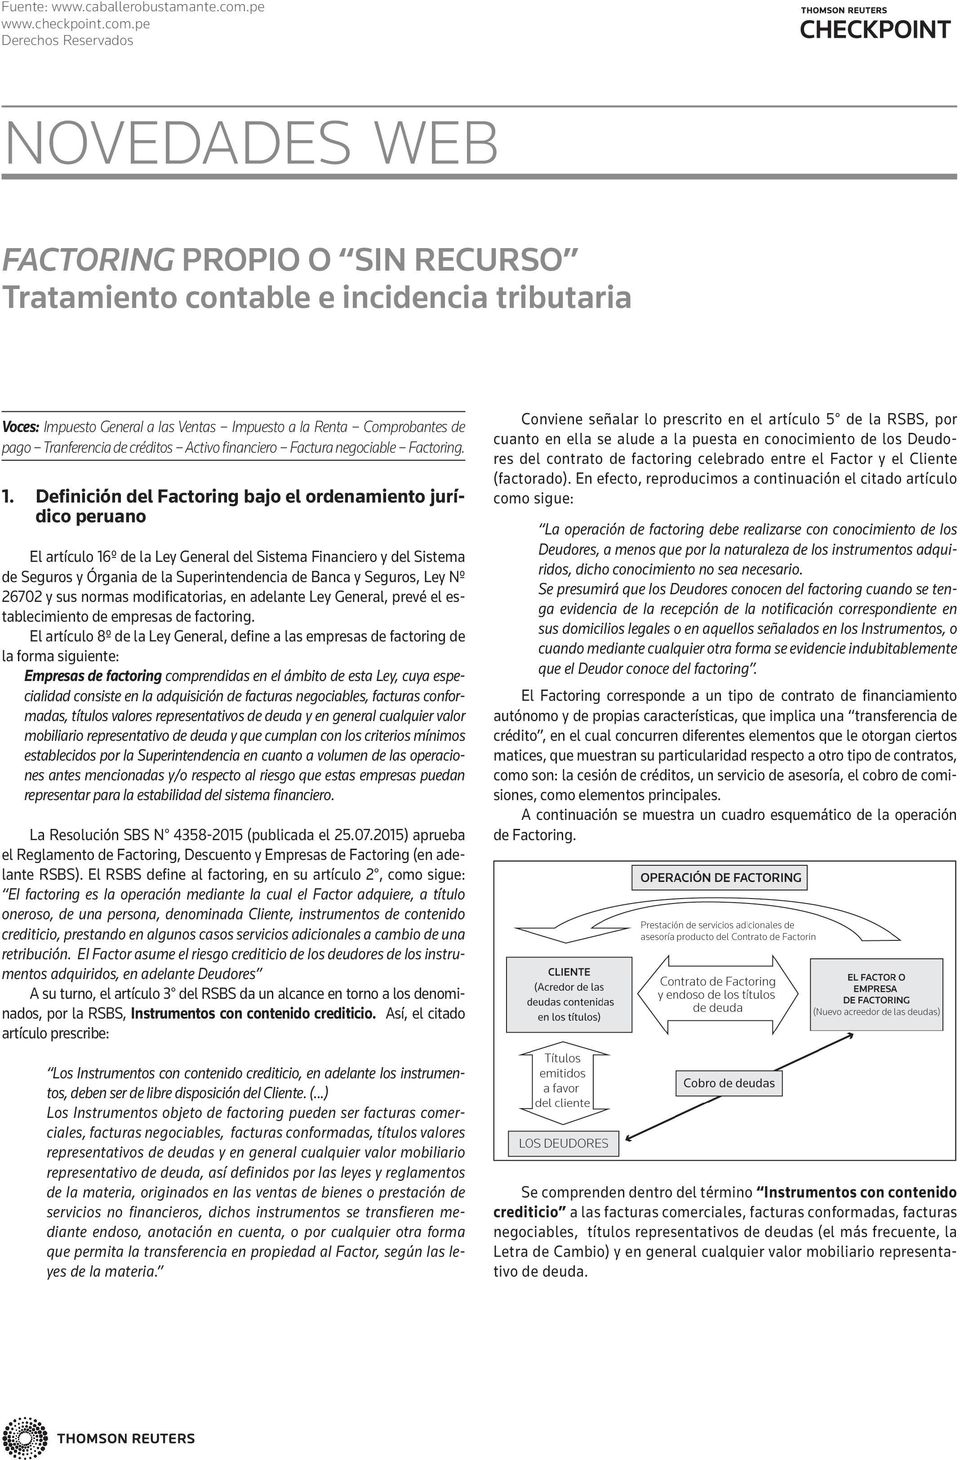 Definición del Factoring bajo el ordenamiento jurídico peruano El artículo 16º de la Ley General del Sistema Financiero y del Sistema de Seguros y Órgania de la Superintendencia de Banca y Seguros,